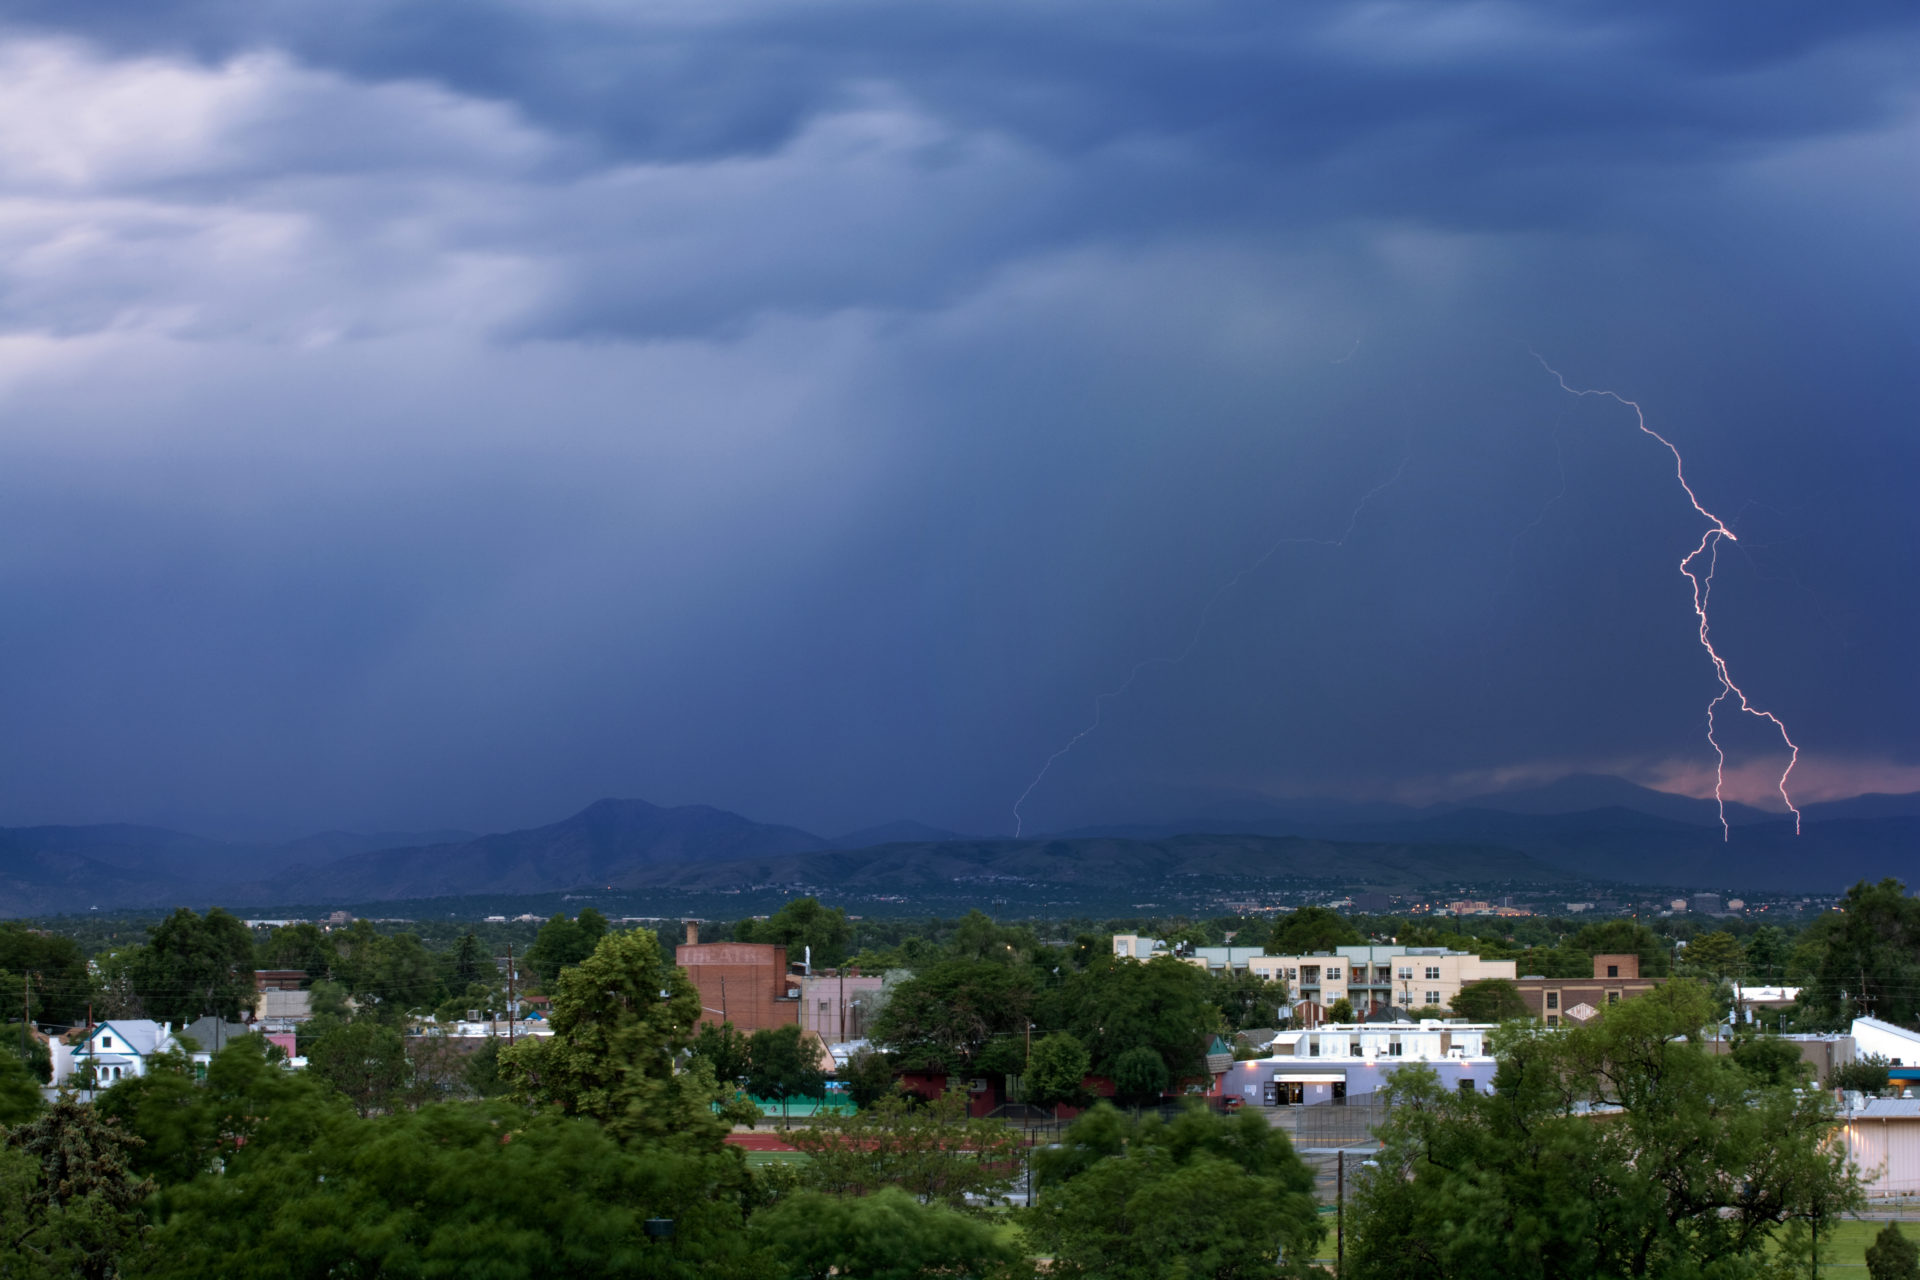 Mount Evans obscured with lightning - June 30, 2011